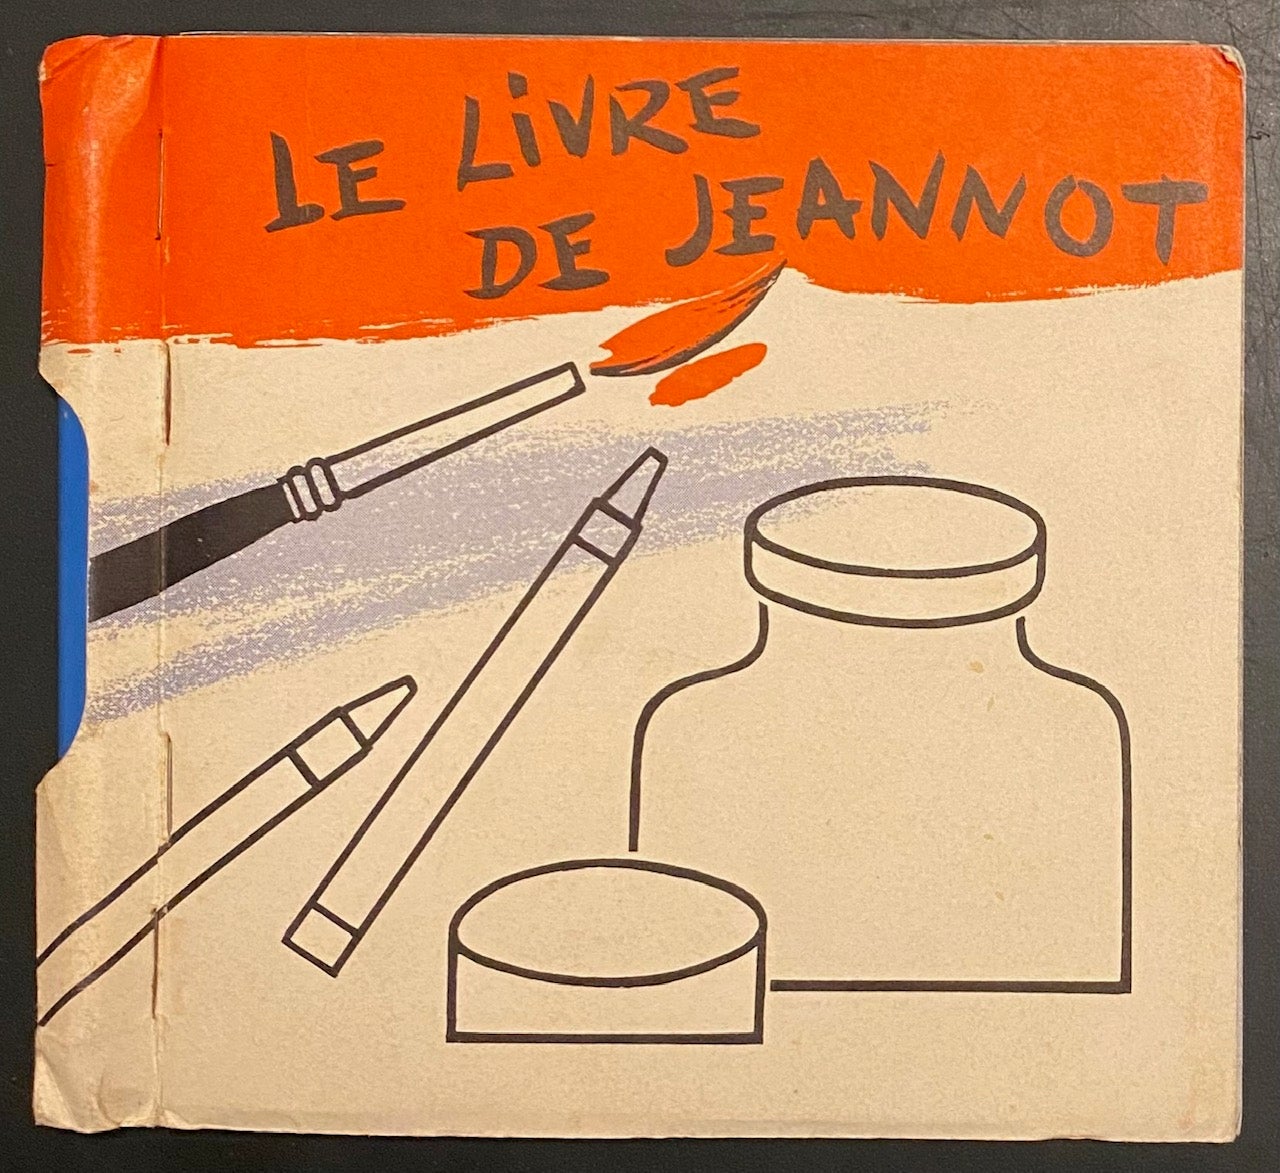 Le livre de Jeannot